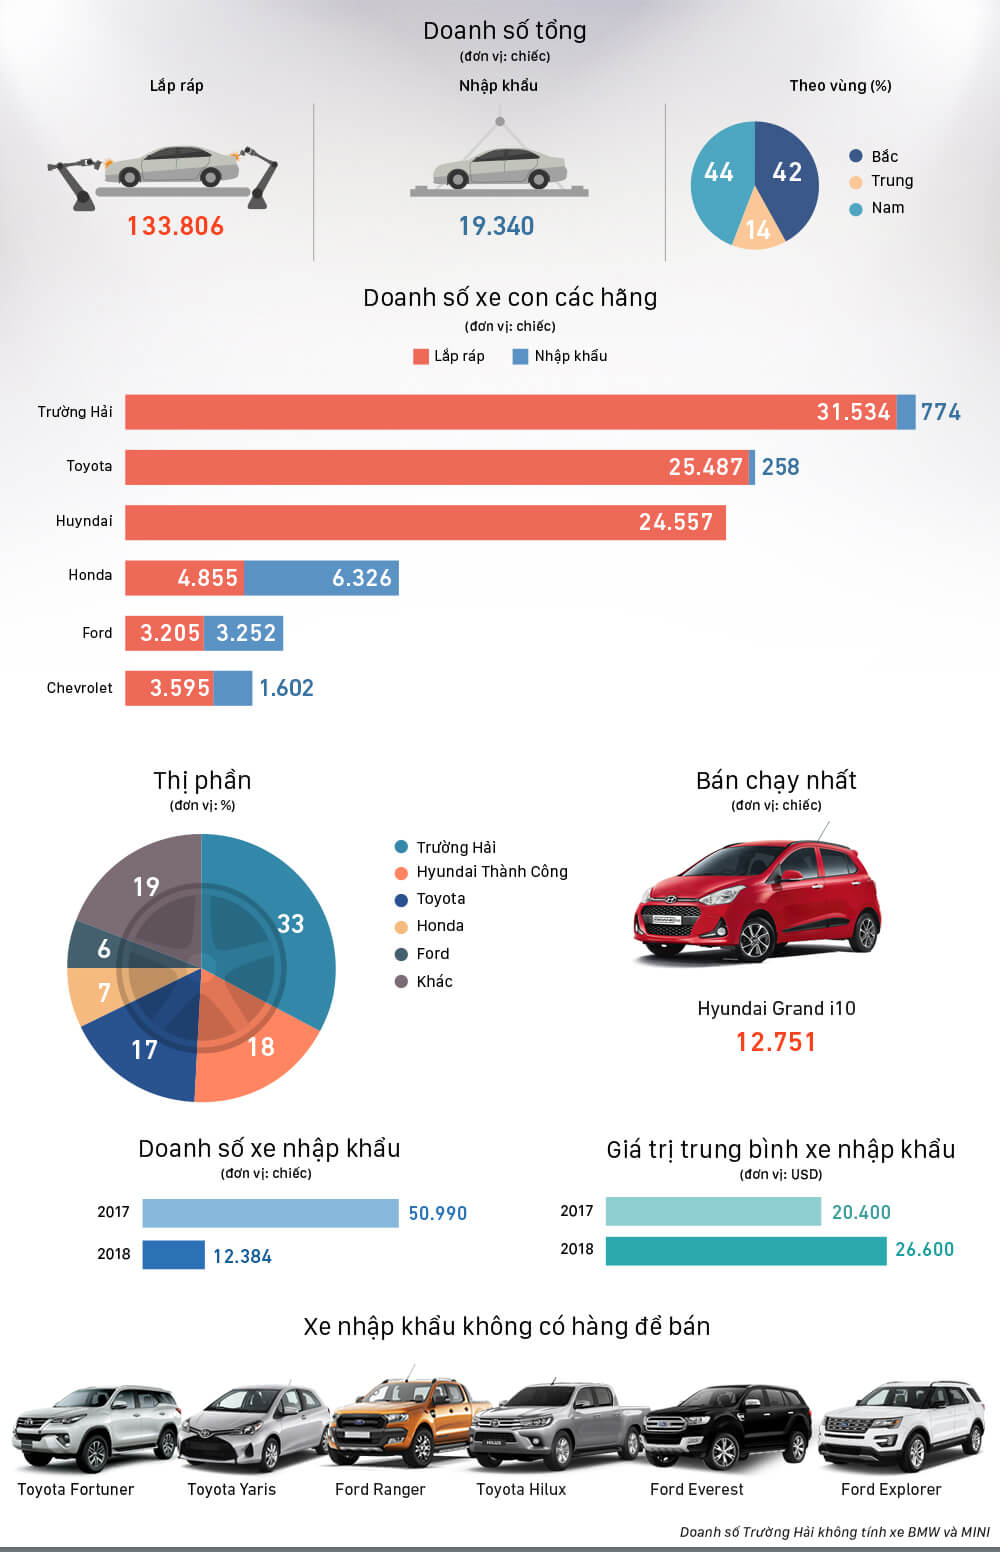 infographic tong quan thi truong xe hoi 6 thang dau nam 2018 - [Infographic] Tổng quan thị trường xe hơi 6 tháng đầu năm 2018 : Những cú "lật mặt" không ai ngờ?